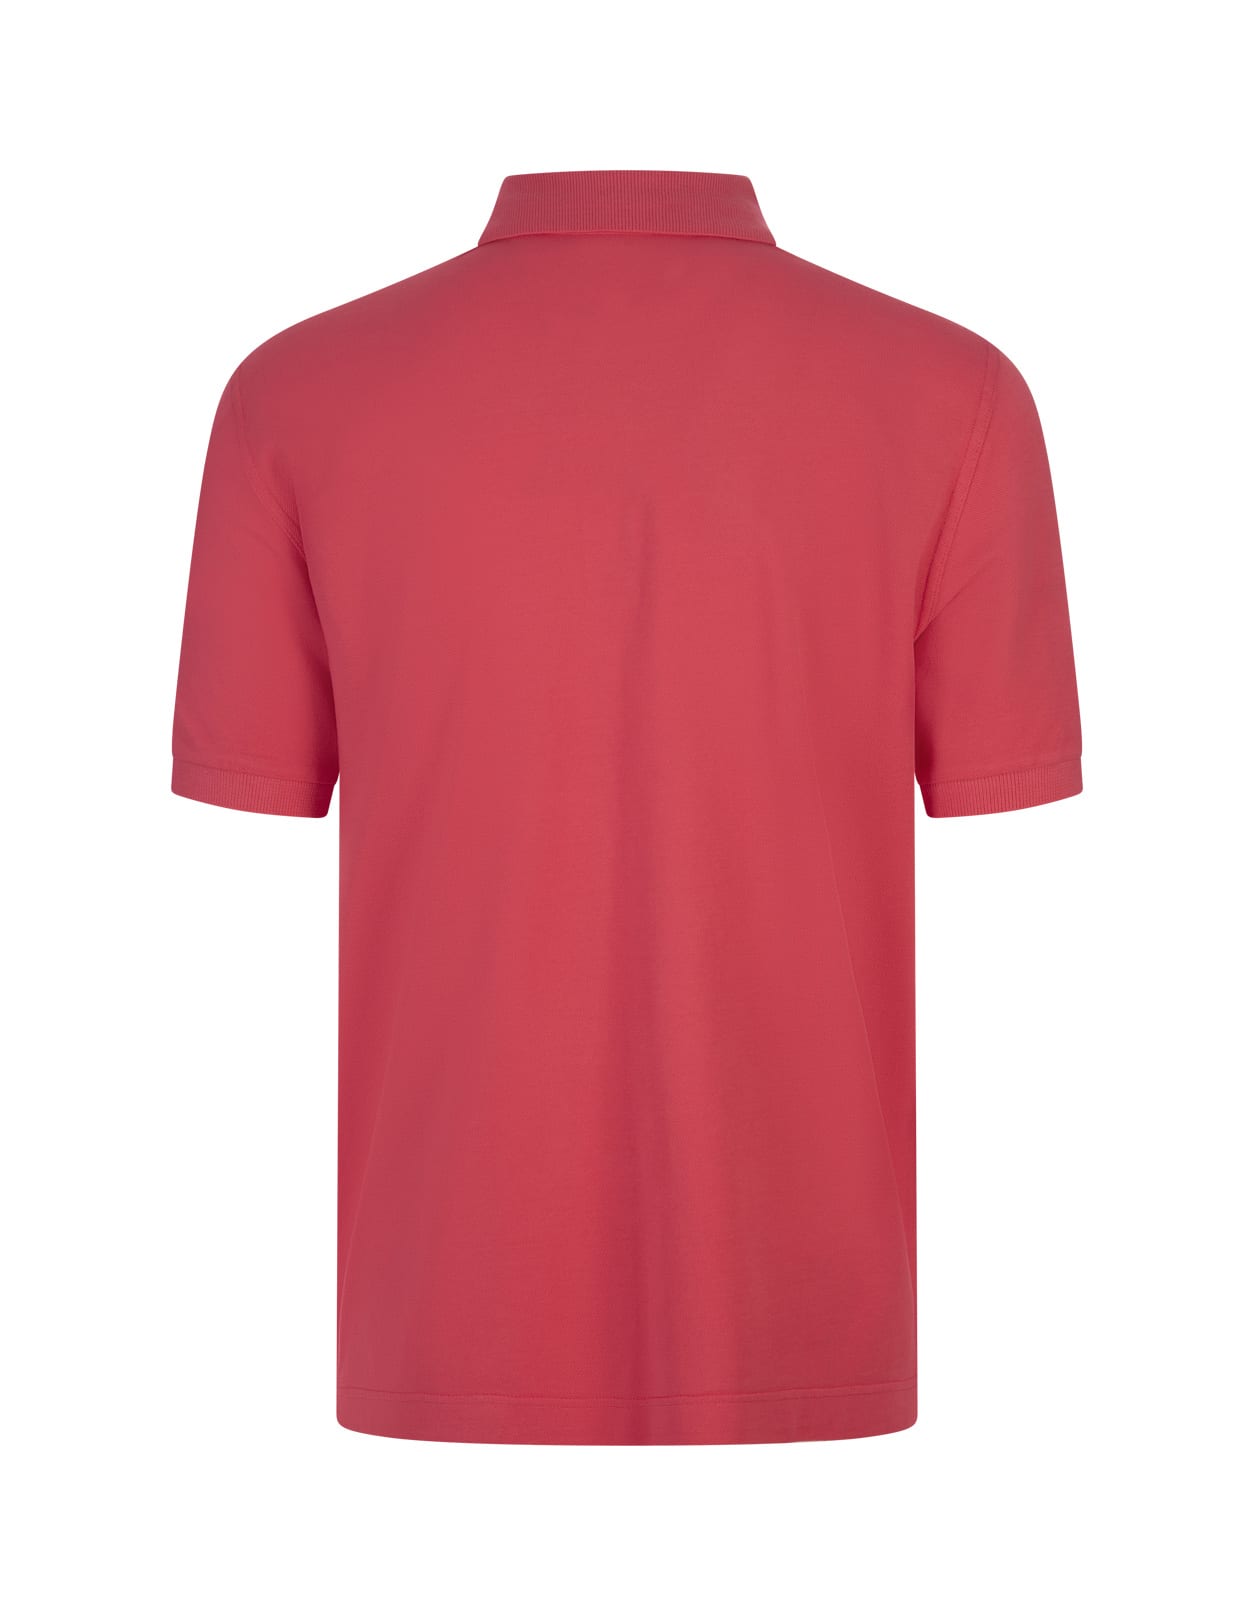 Shop Fedeli Red Cotton Pique Polo Shirt